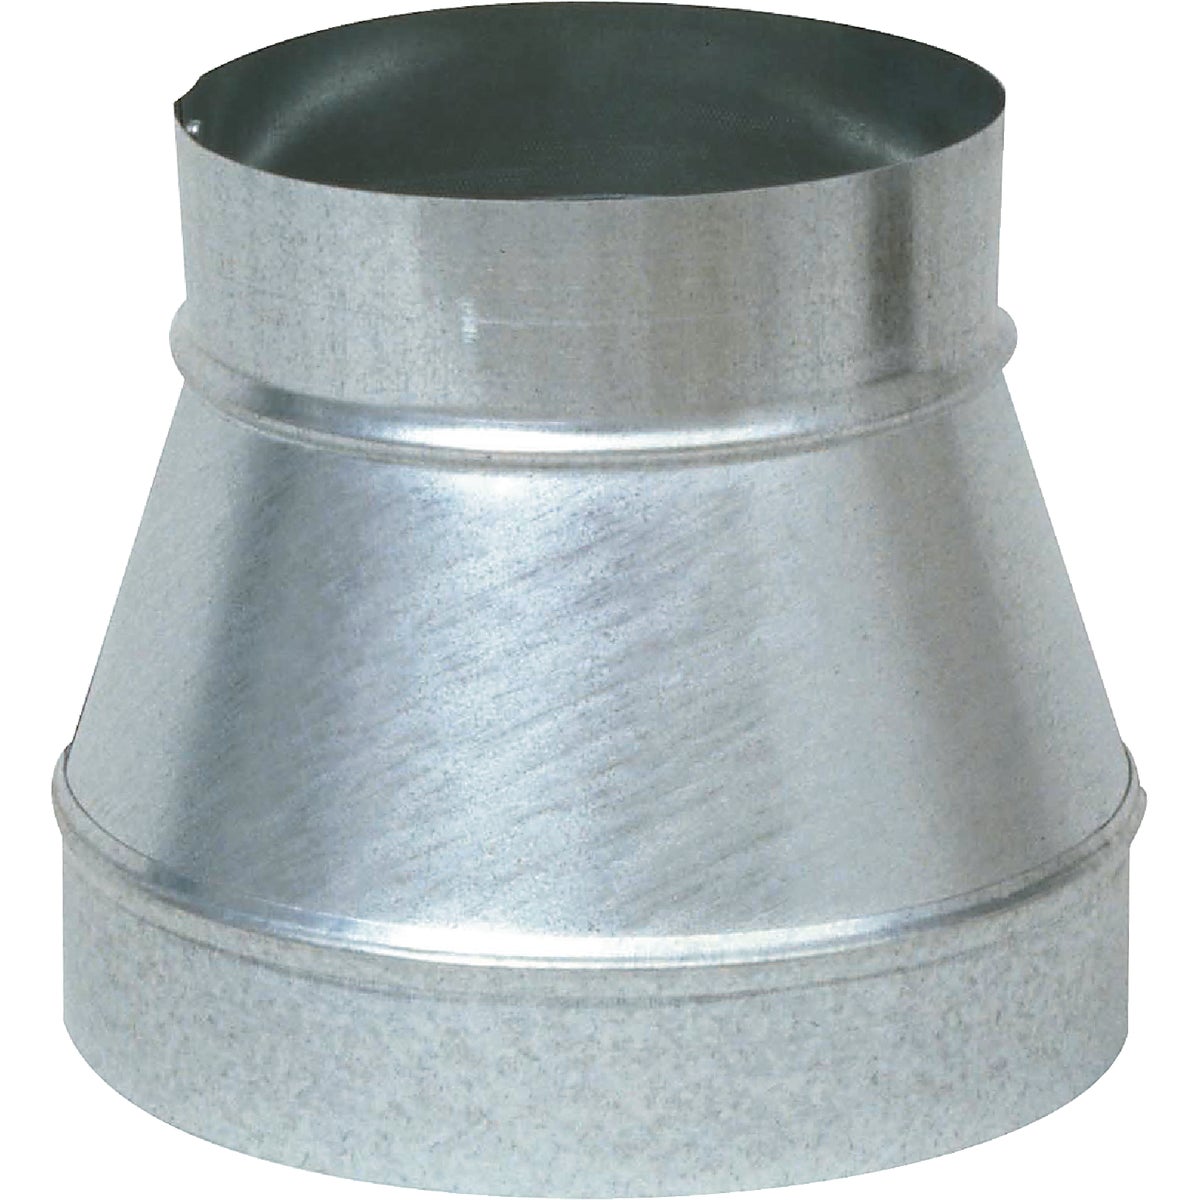 Item 453072, Used to reduce or increase diameter of galvanized round perimeter pipe.